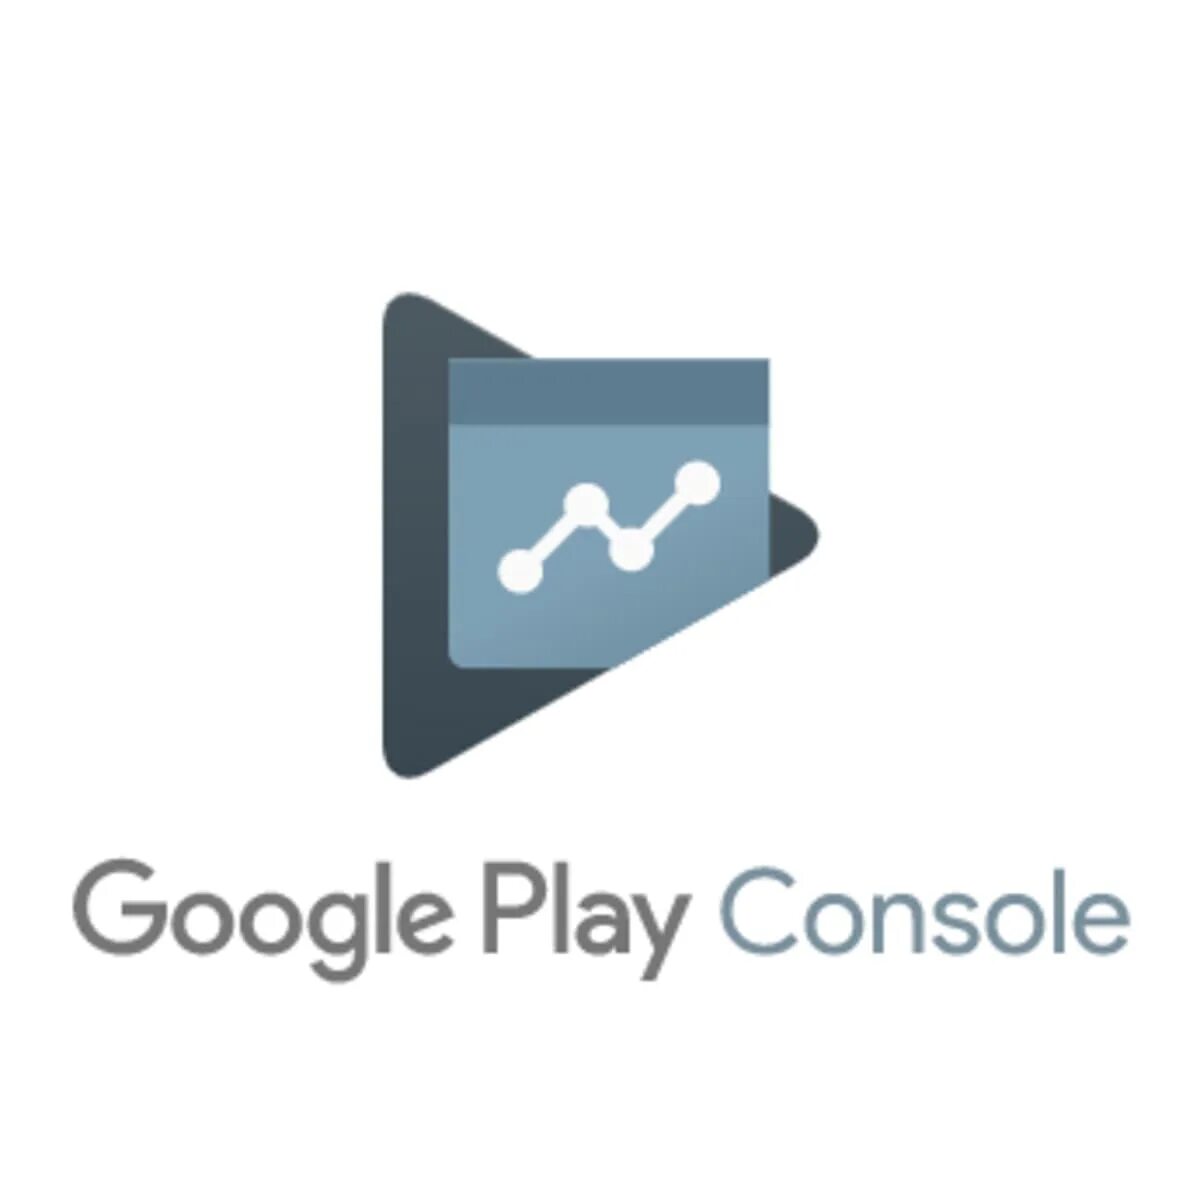 Купить аккаунт google play. Плей консоль. Google Play Console. Google Play Console developer. Google Play developer Console icon.